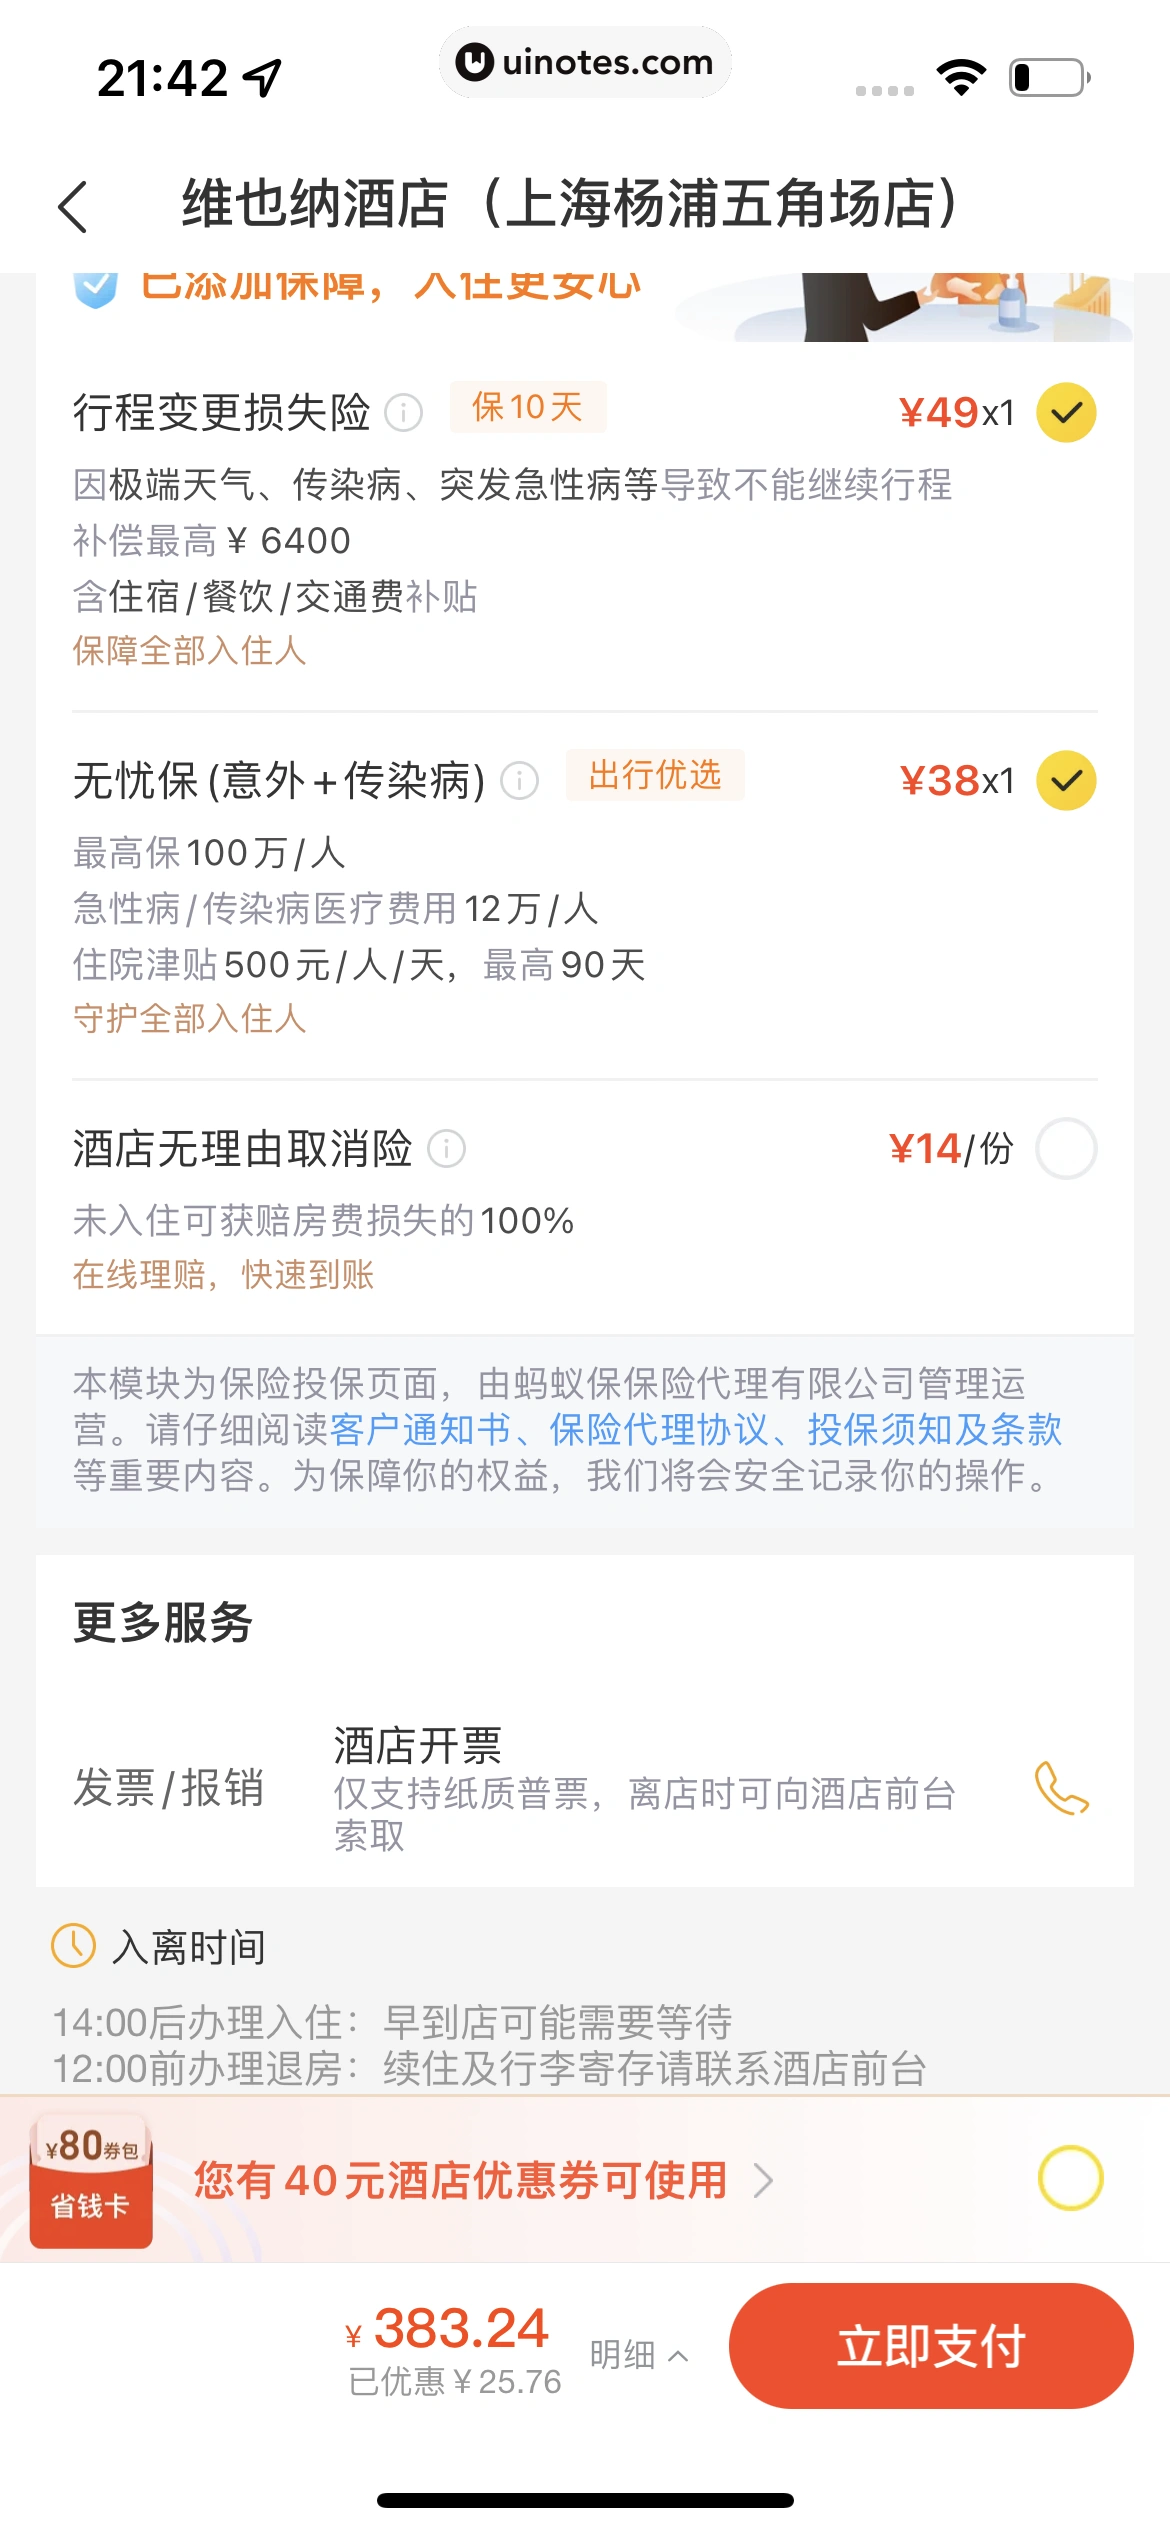 飞猪旅行 App 截图 225 - UI Notes